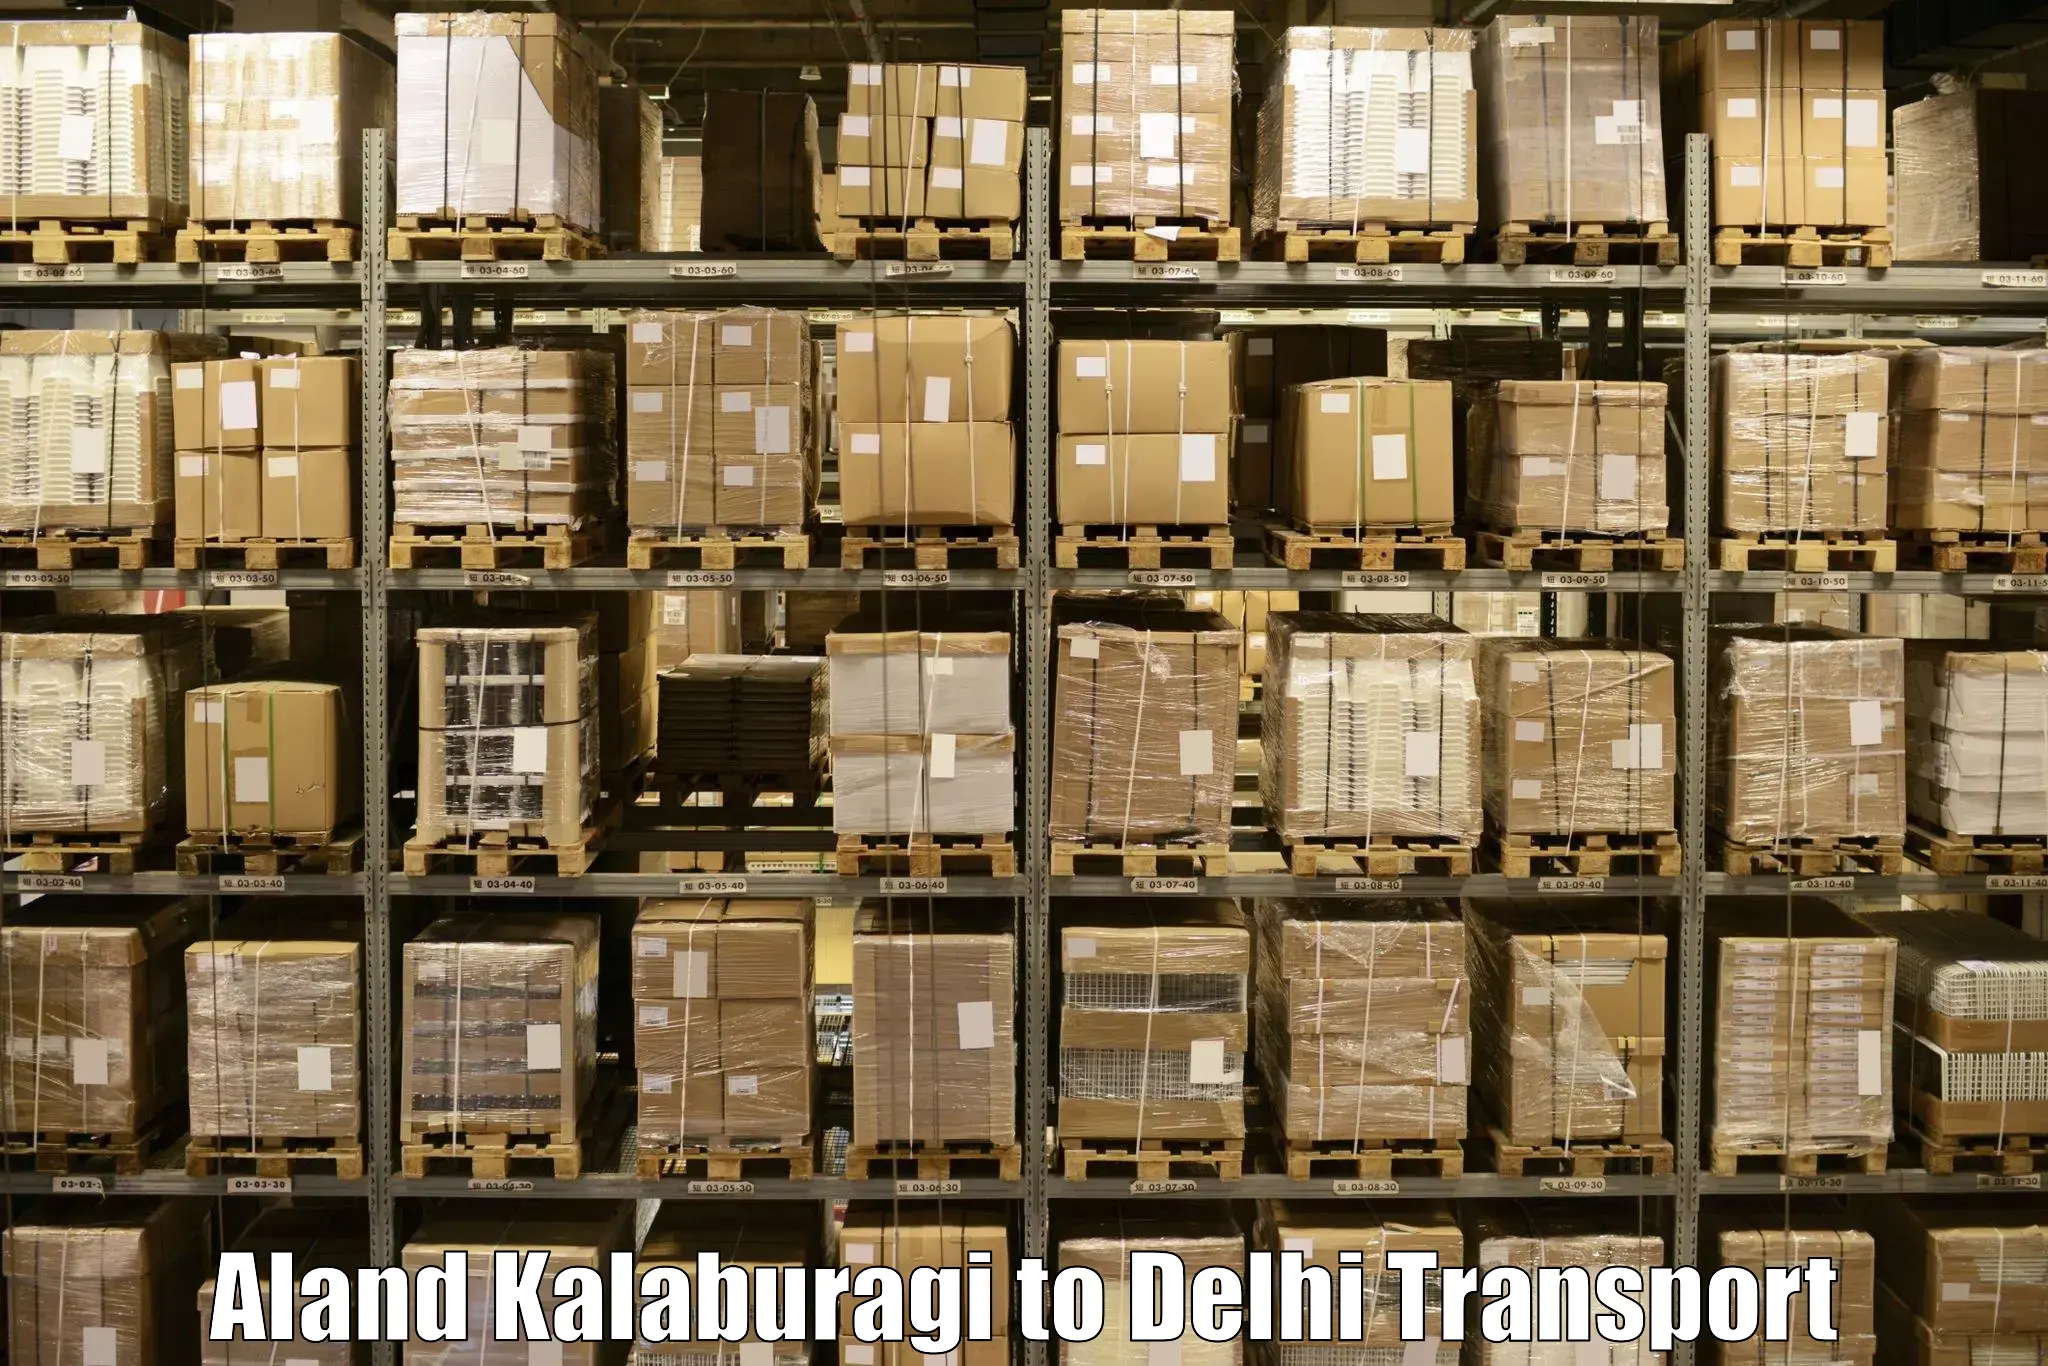 Land transport services Aland Kalaburagi to NCR